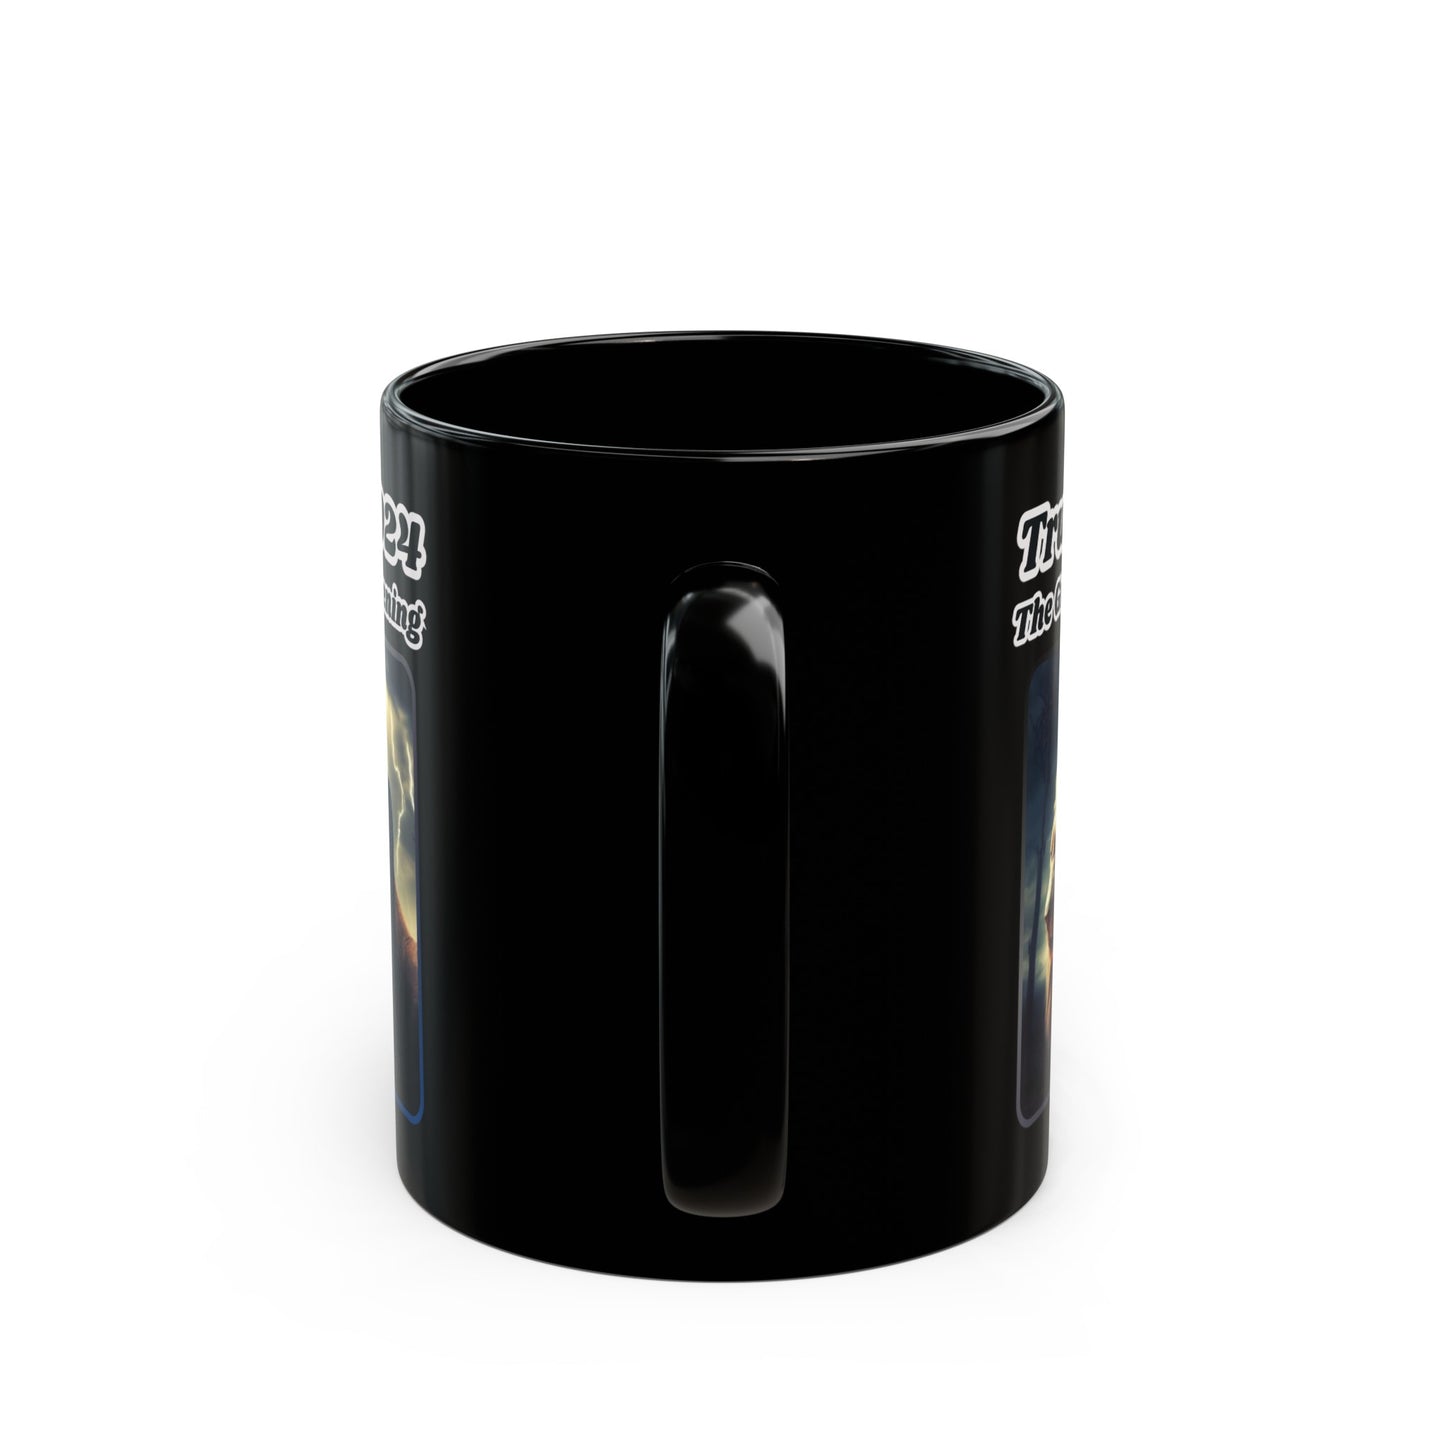 THE GREAT AWAKENING Patriotic Ceramic Coffee Mug (one 11oz coffee)